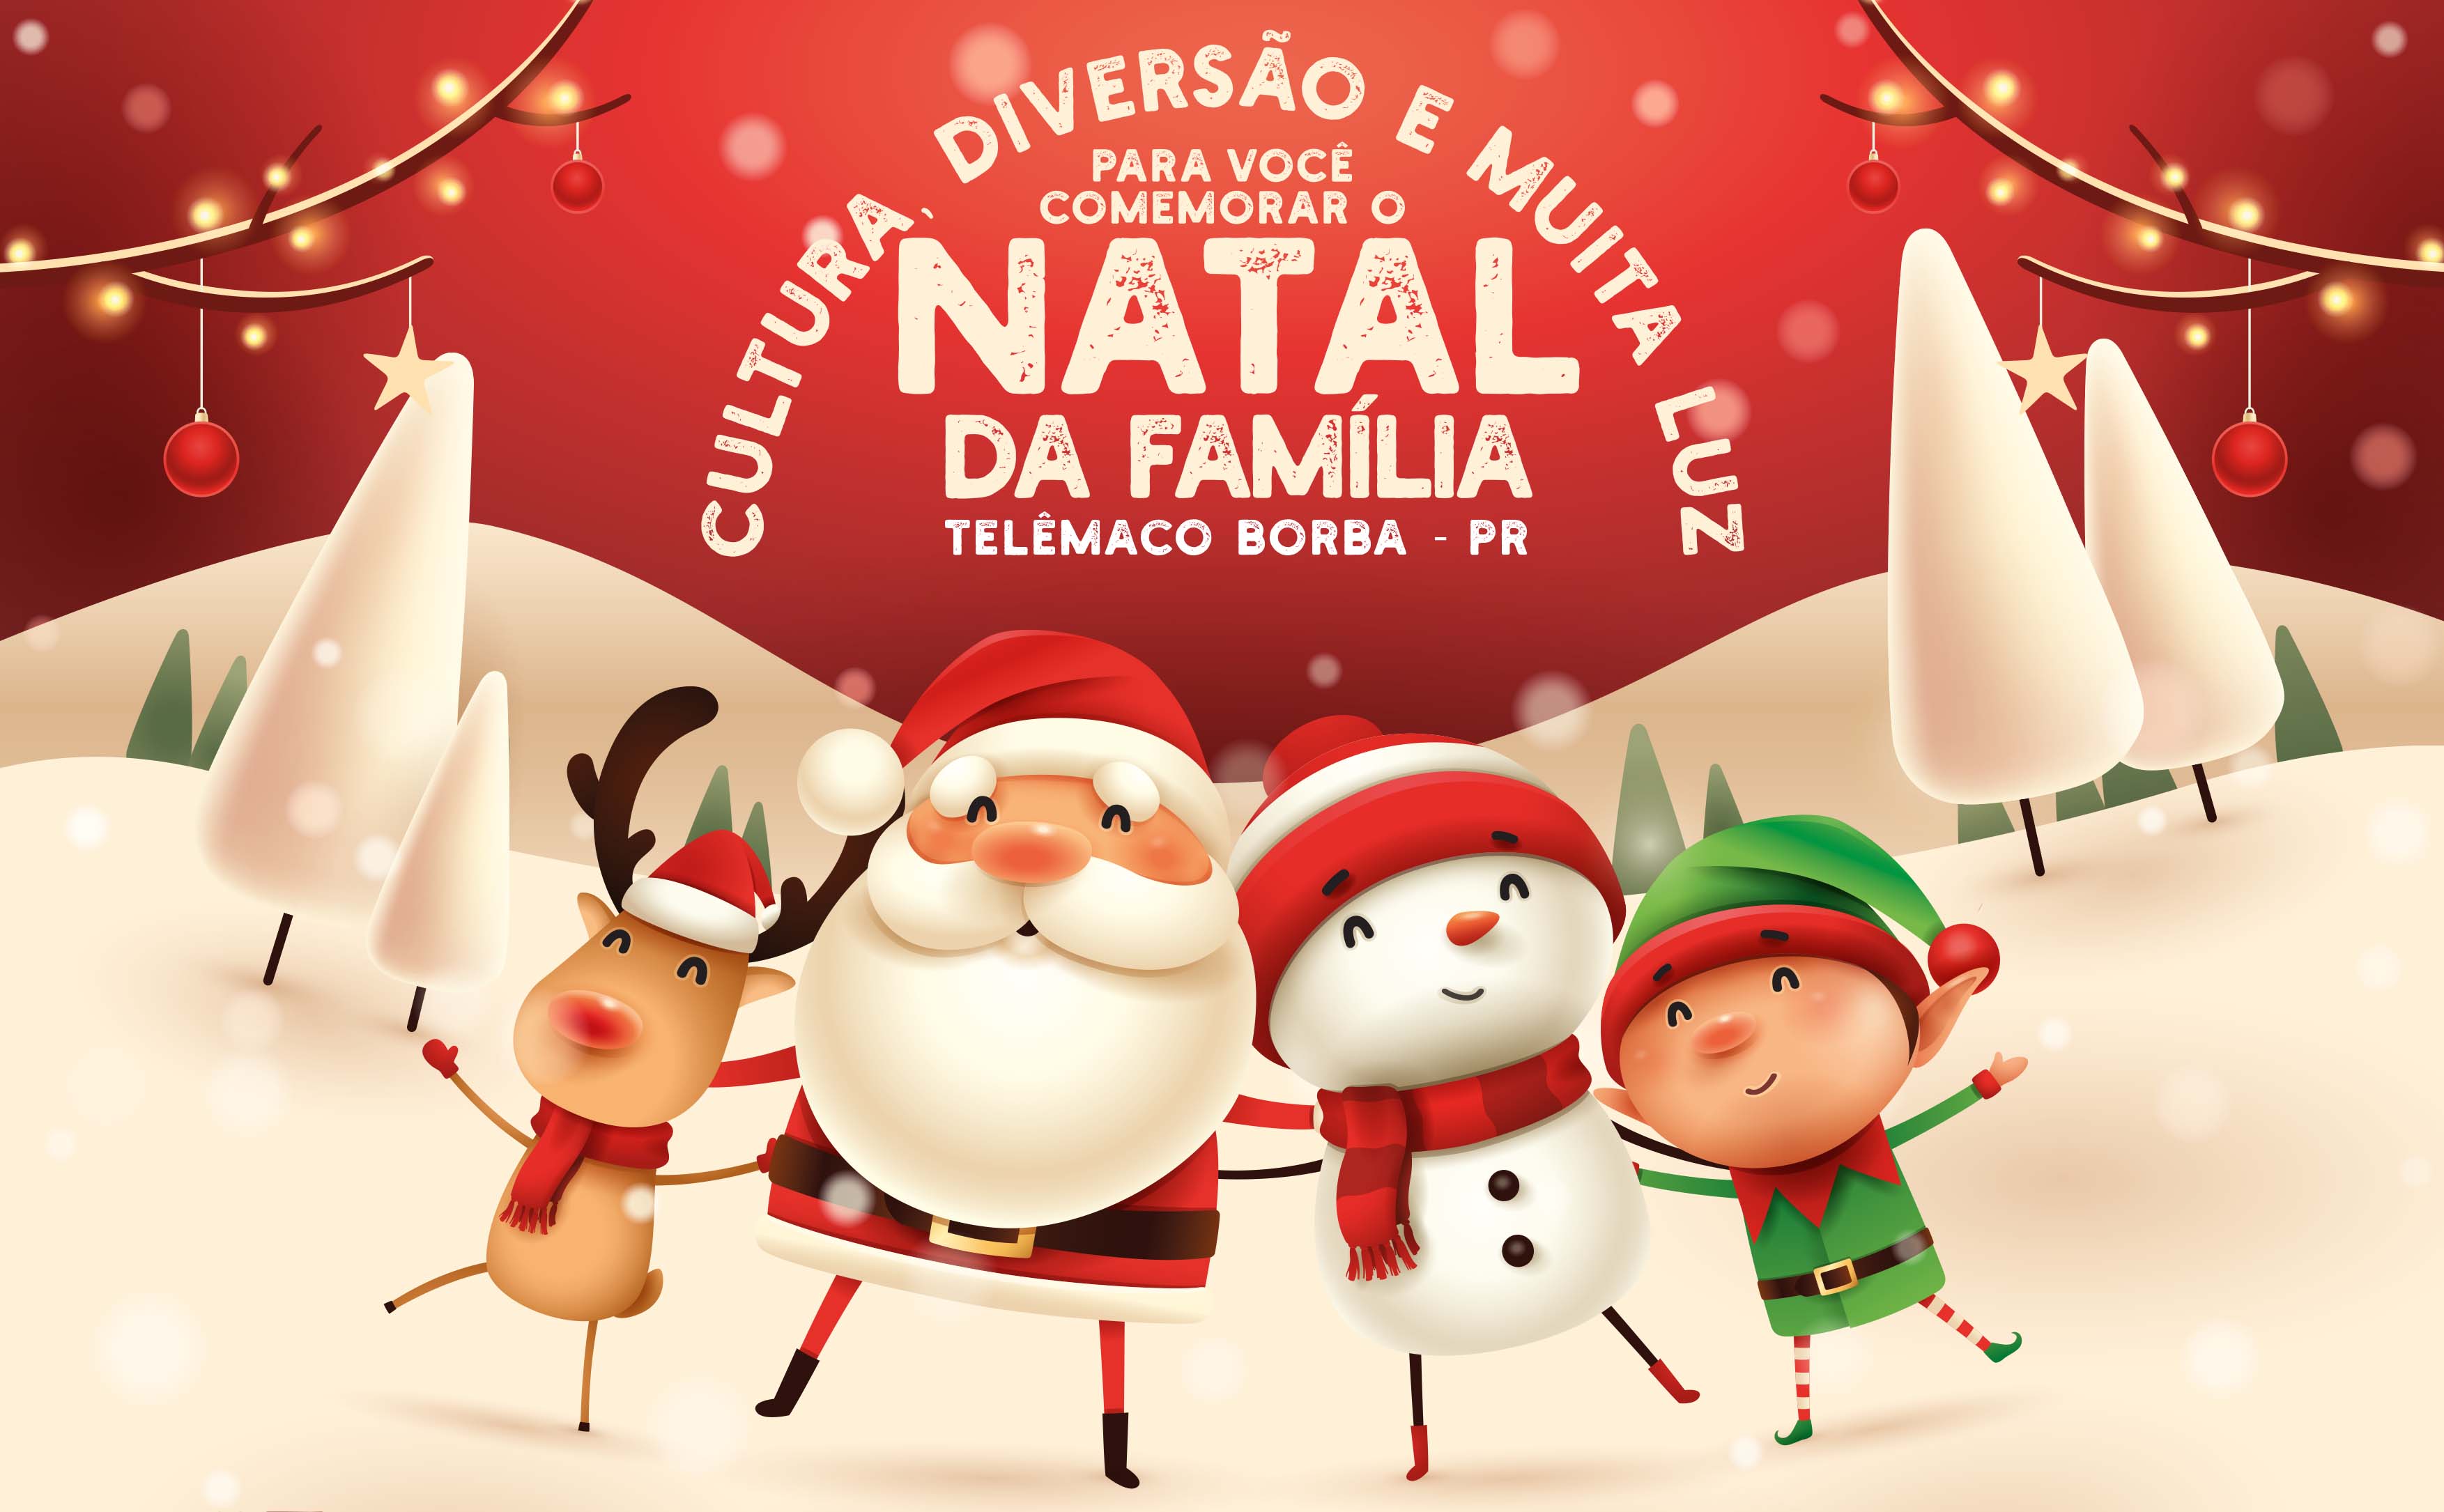 Confira a programação do “Natal da Família” em Telêmaco Borba - Prefeitura  de Telêmaco Borba